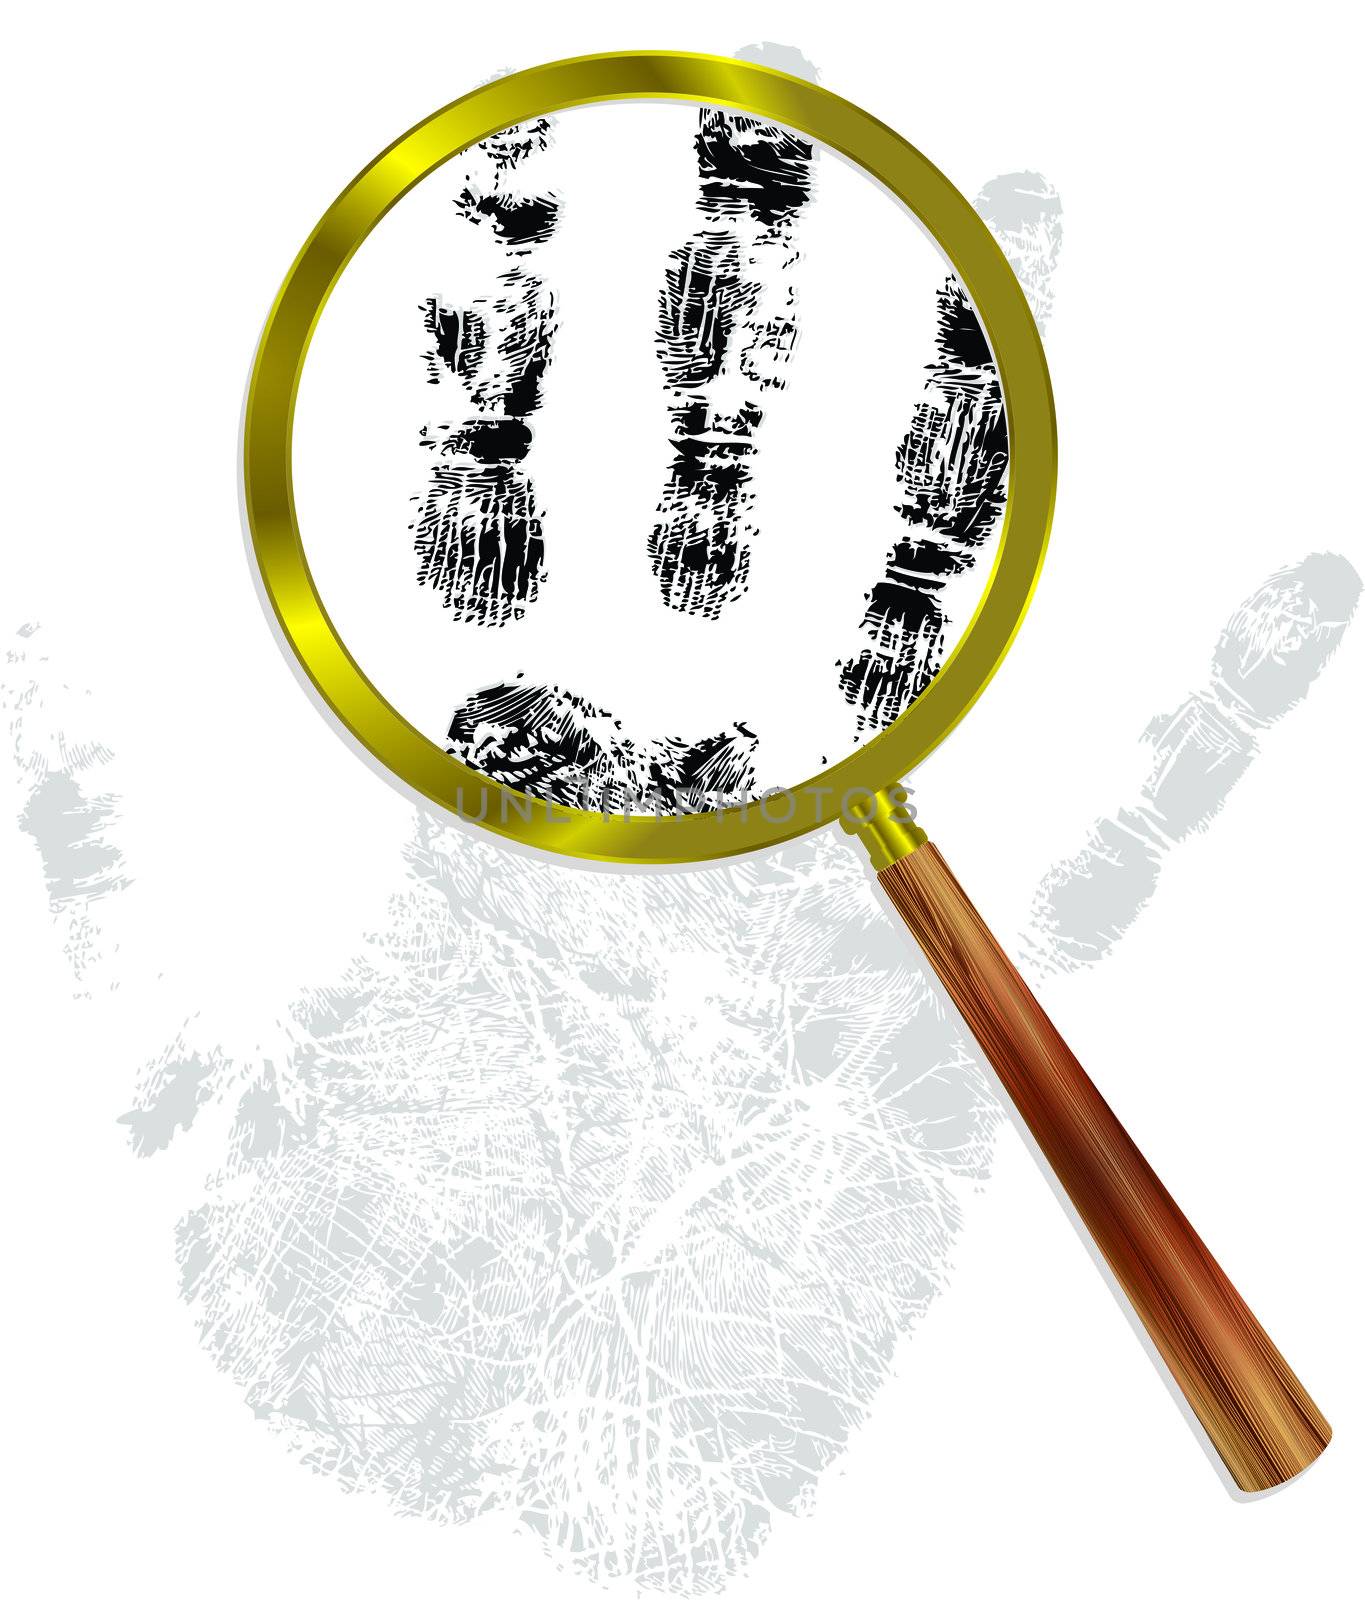 fingerprint through magnifying glass  by mereutaandrei